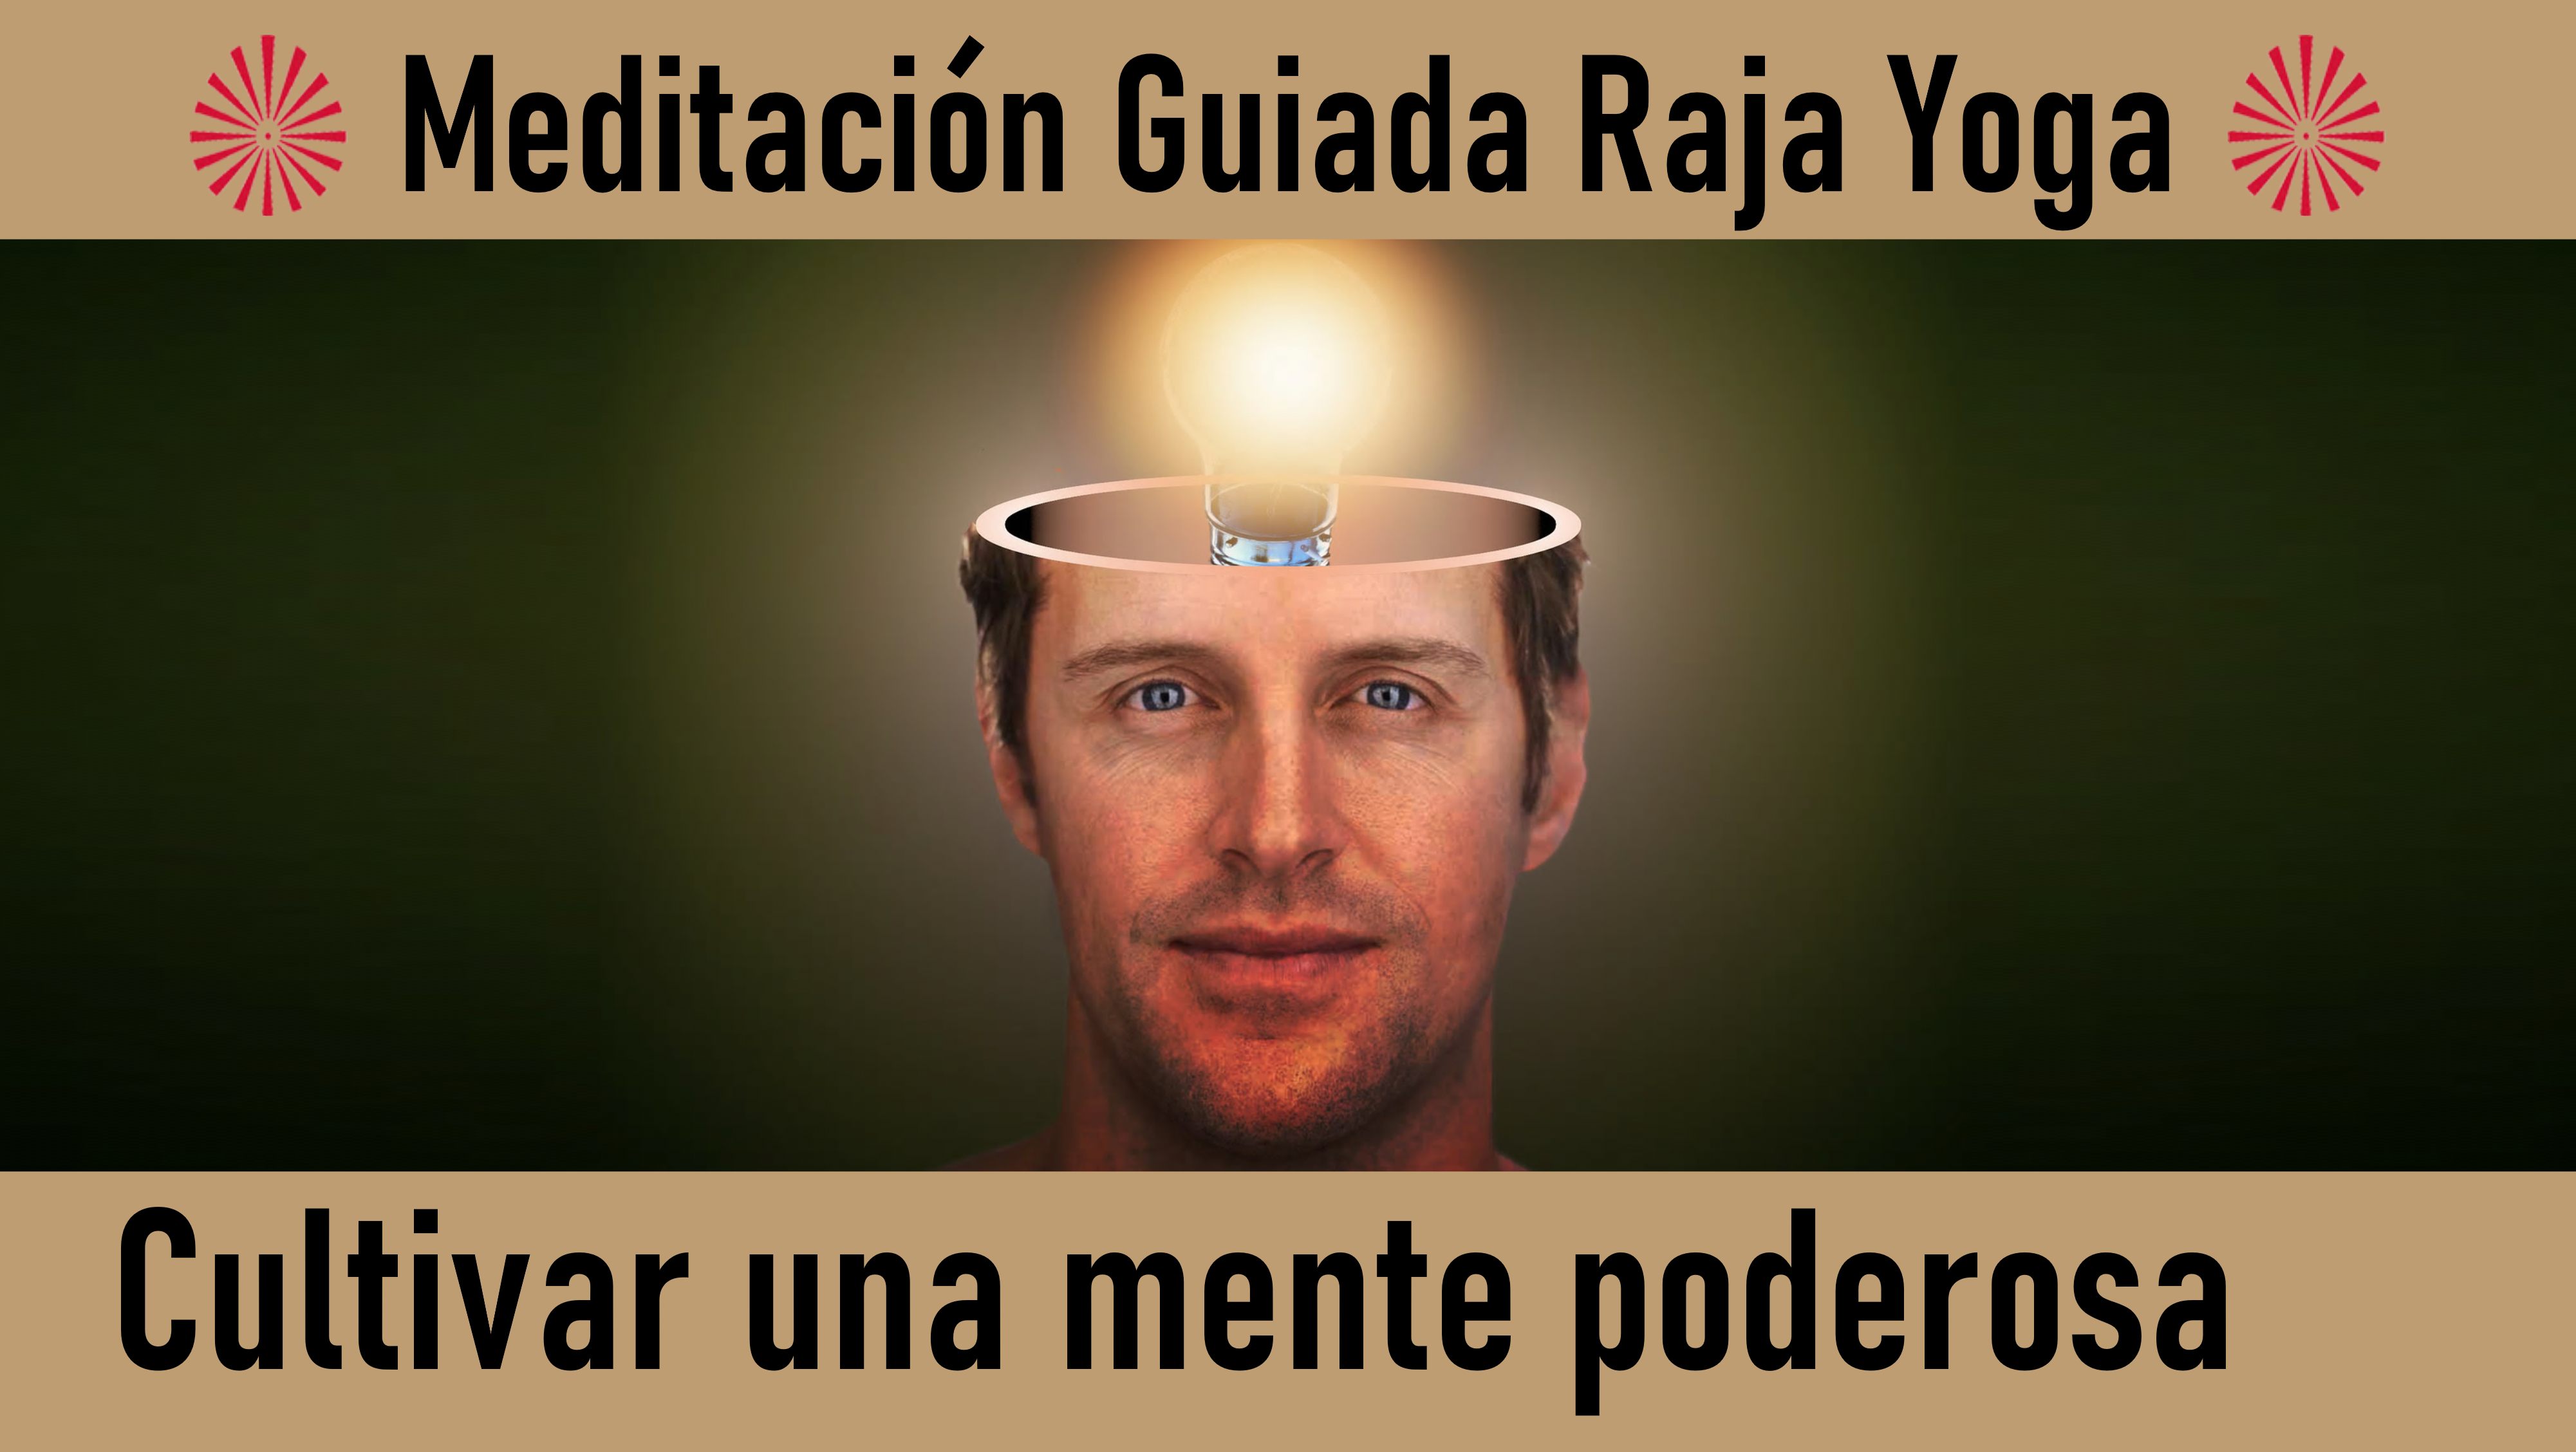 Meditación Raja Yoga: Cultivar una mente poderosa (15 Junio 2020) On-line desde Madrid